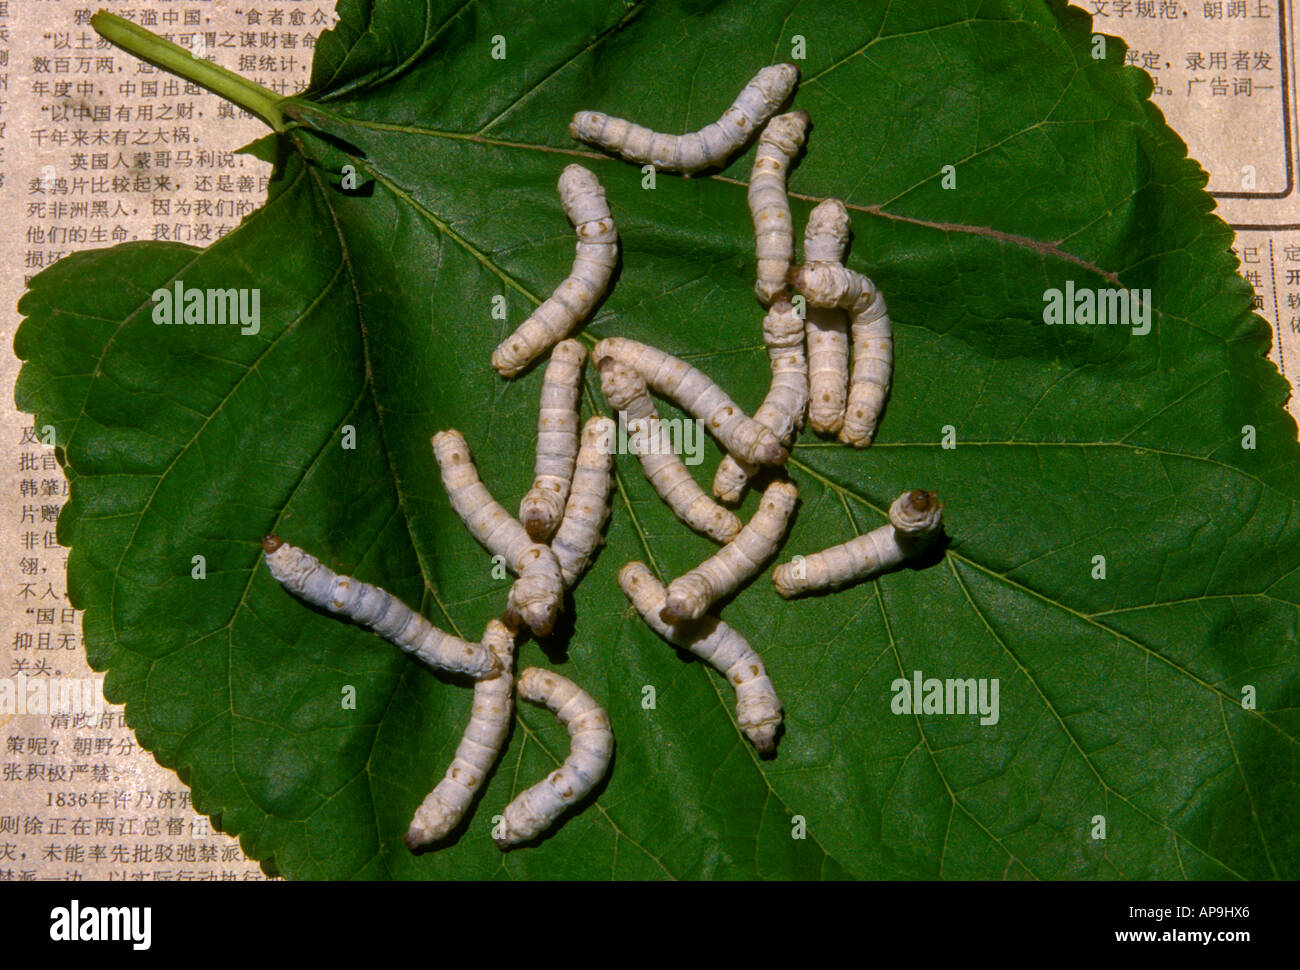 Silkworm bruchi alimentazione su foglie di gelso a, i ricami di Suzhou Research Institute, nella città di Suzhou, Cina Foto Stock